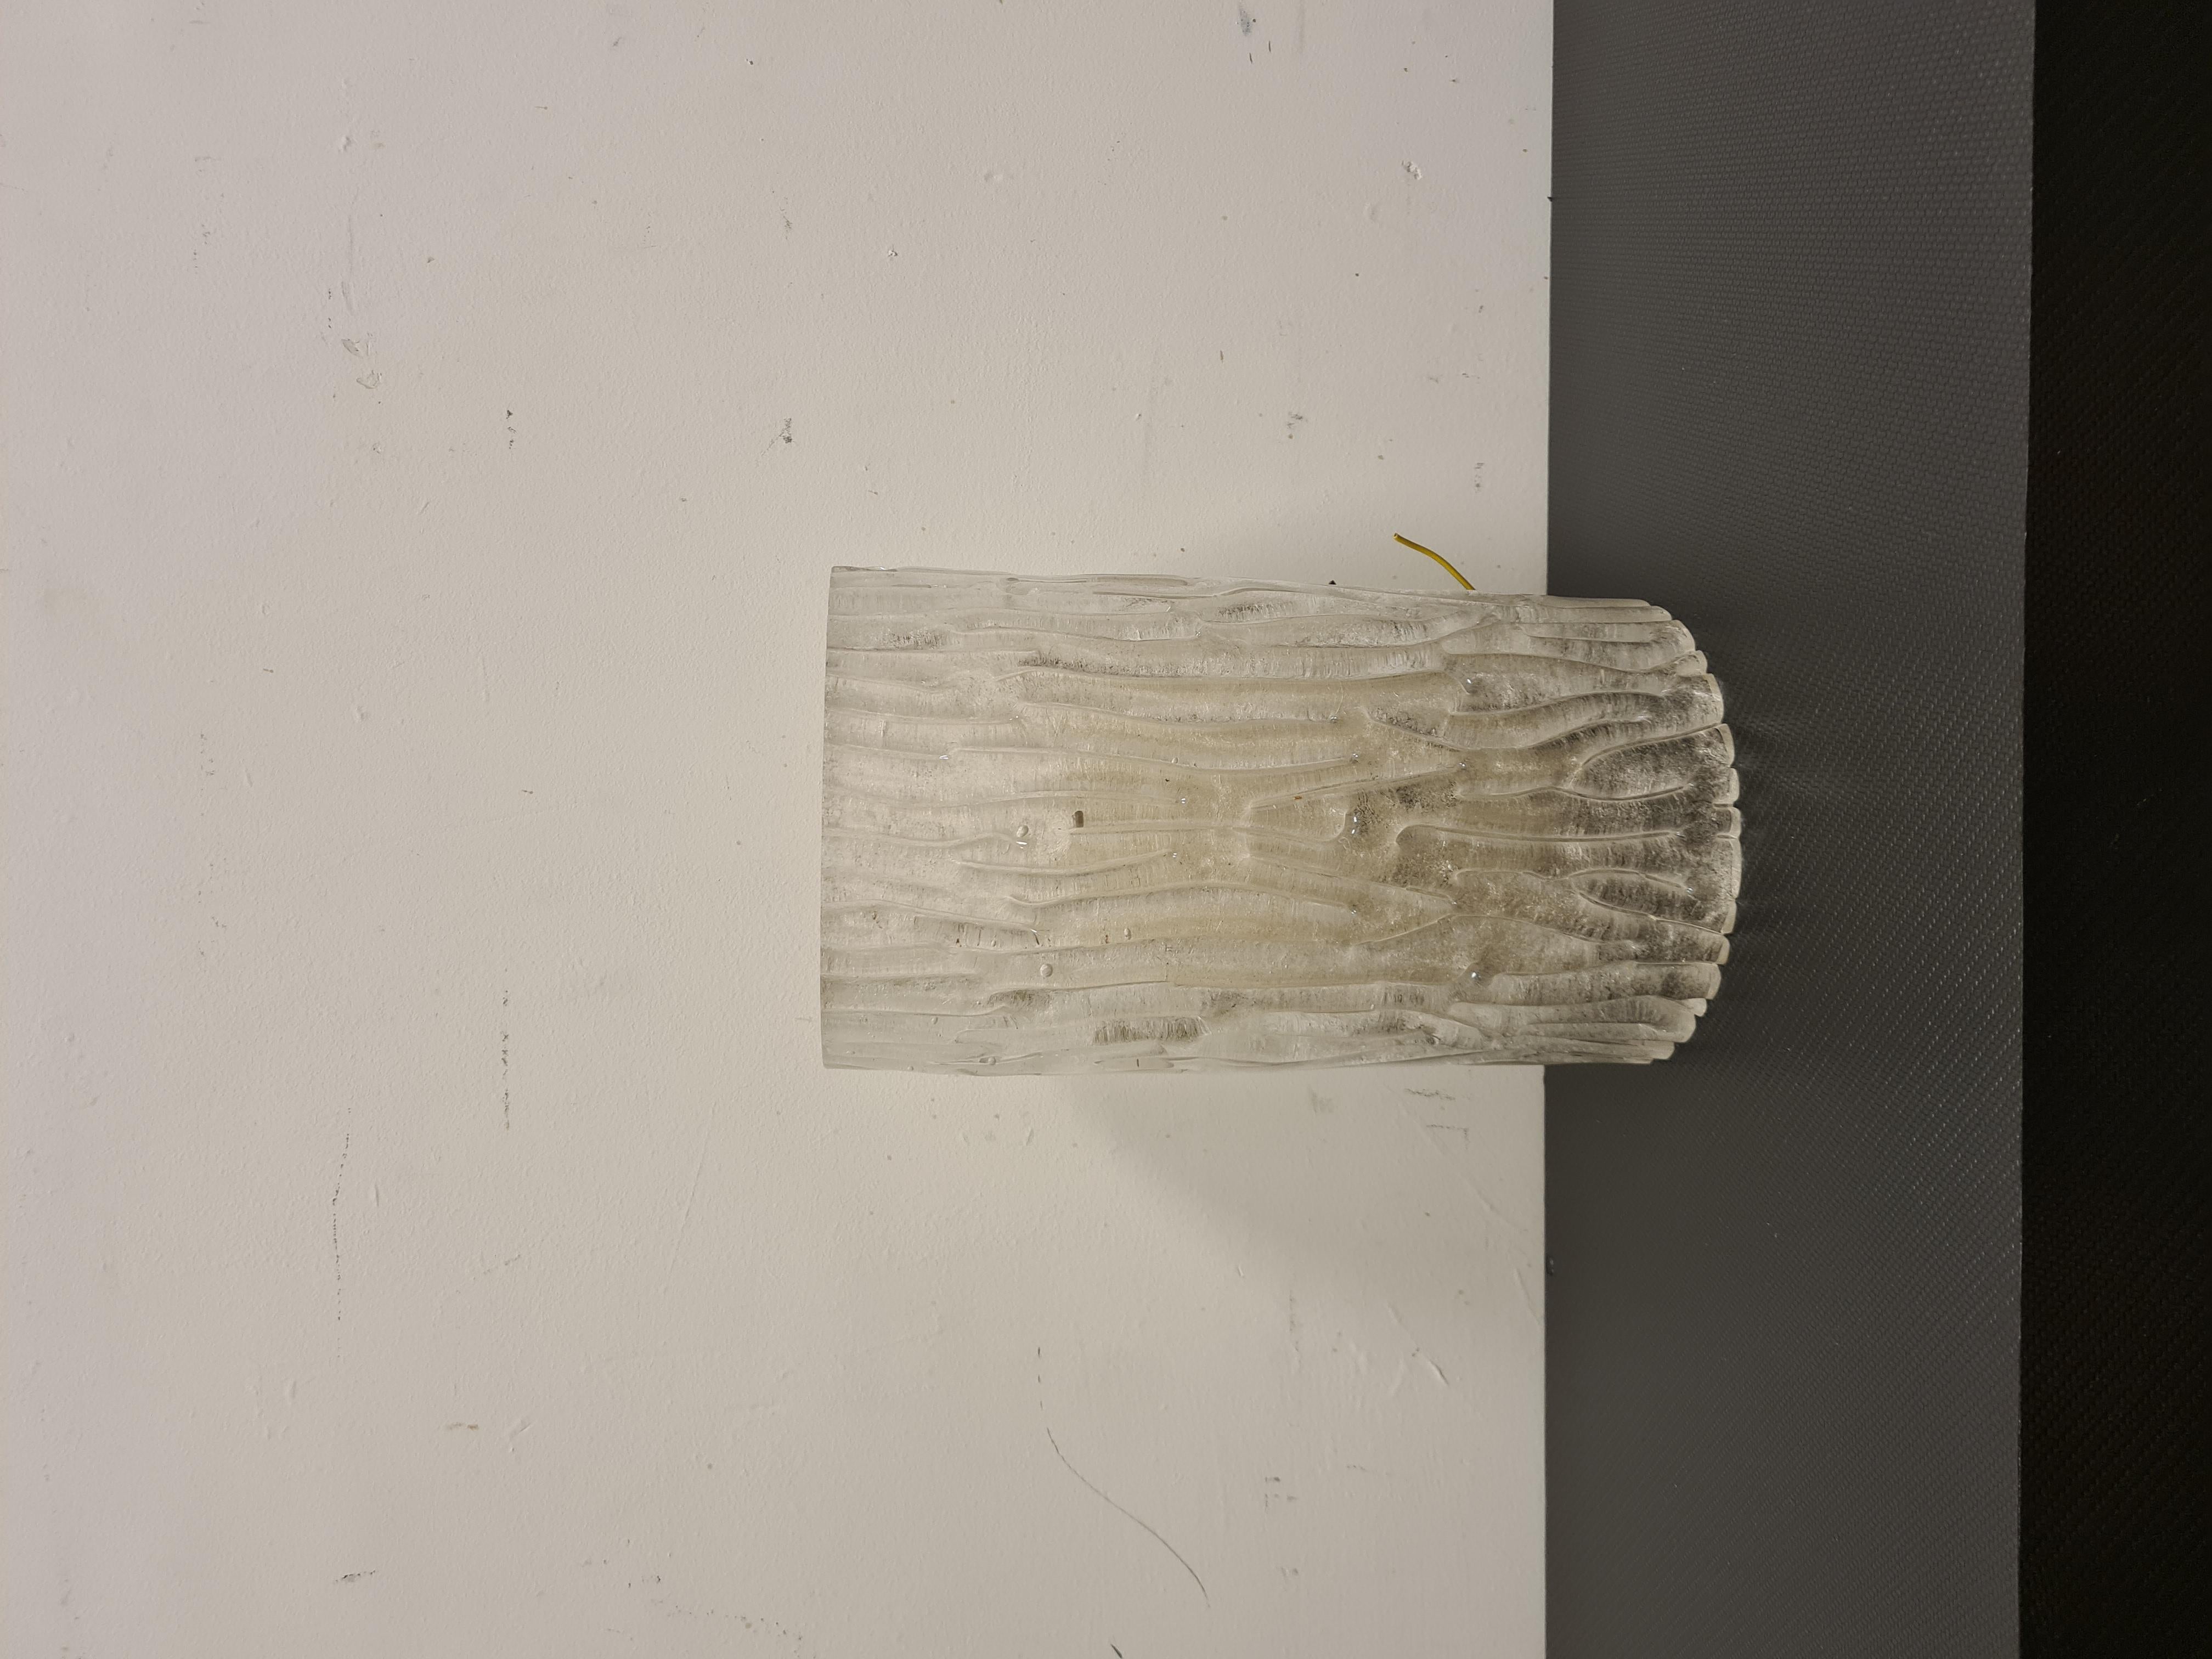 Applique della serie Corteccia di Toni Zuccheri per Venini.

N° 1 applique in vetro di murano realizzata con lavorazione a corteccia.

L'applique è stata disegnata da Toni Zuccheri per la vetreria Venini negli anni 60'.

Il vetro si trova in ottimo